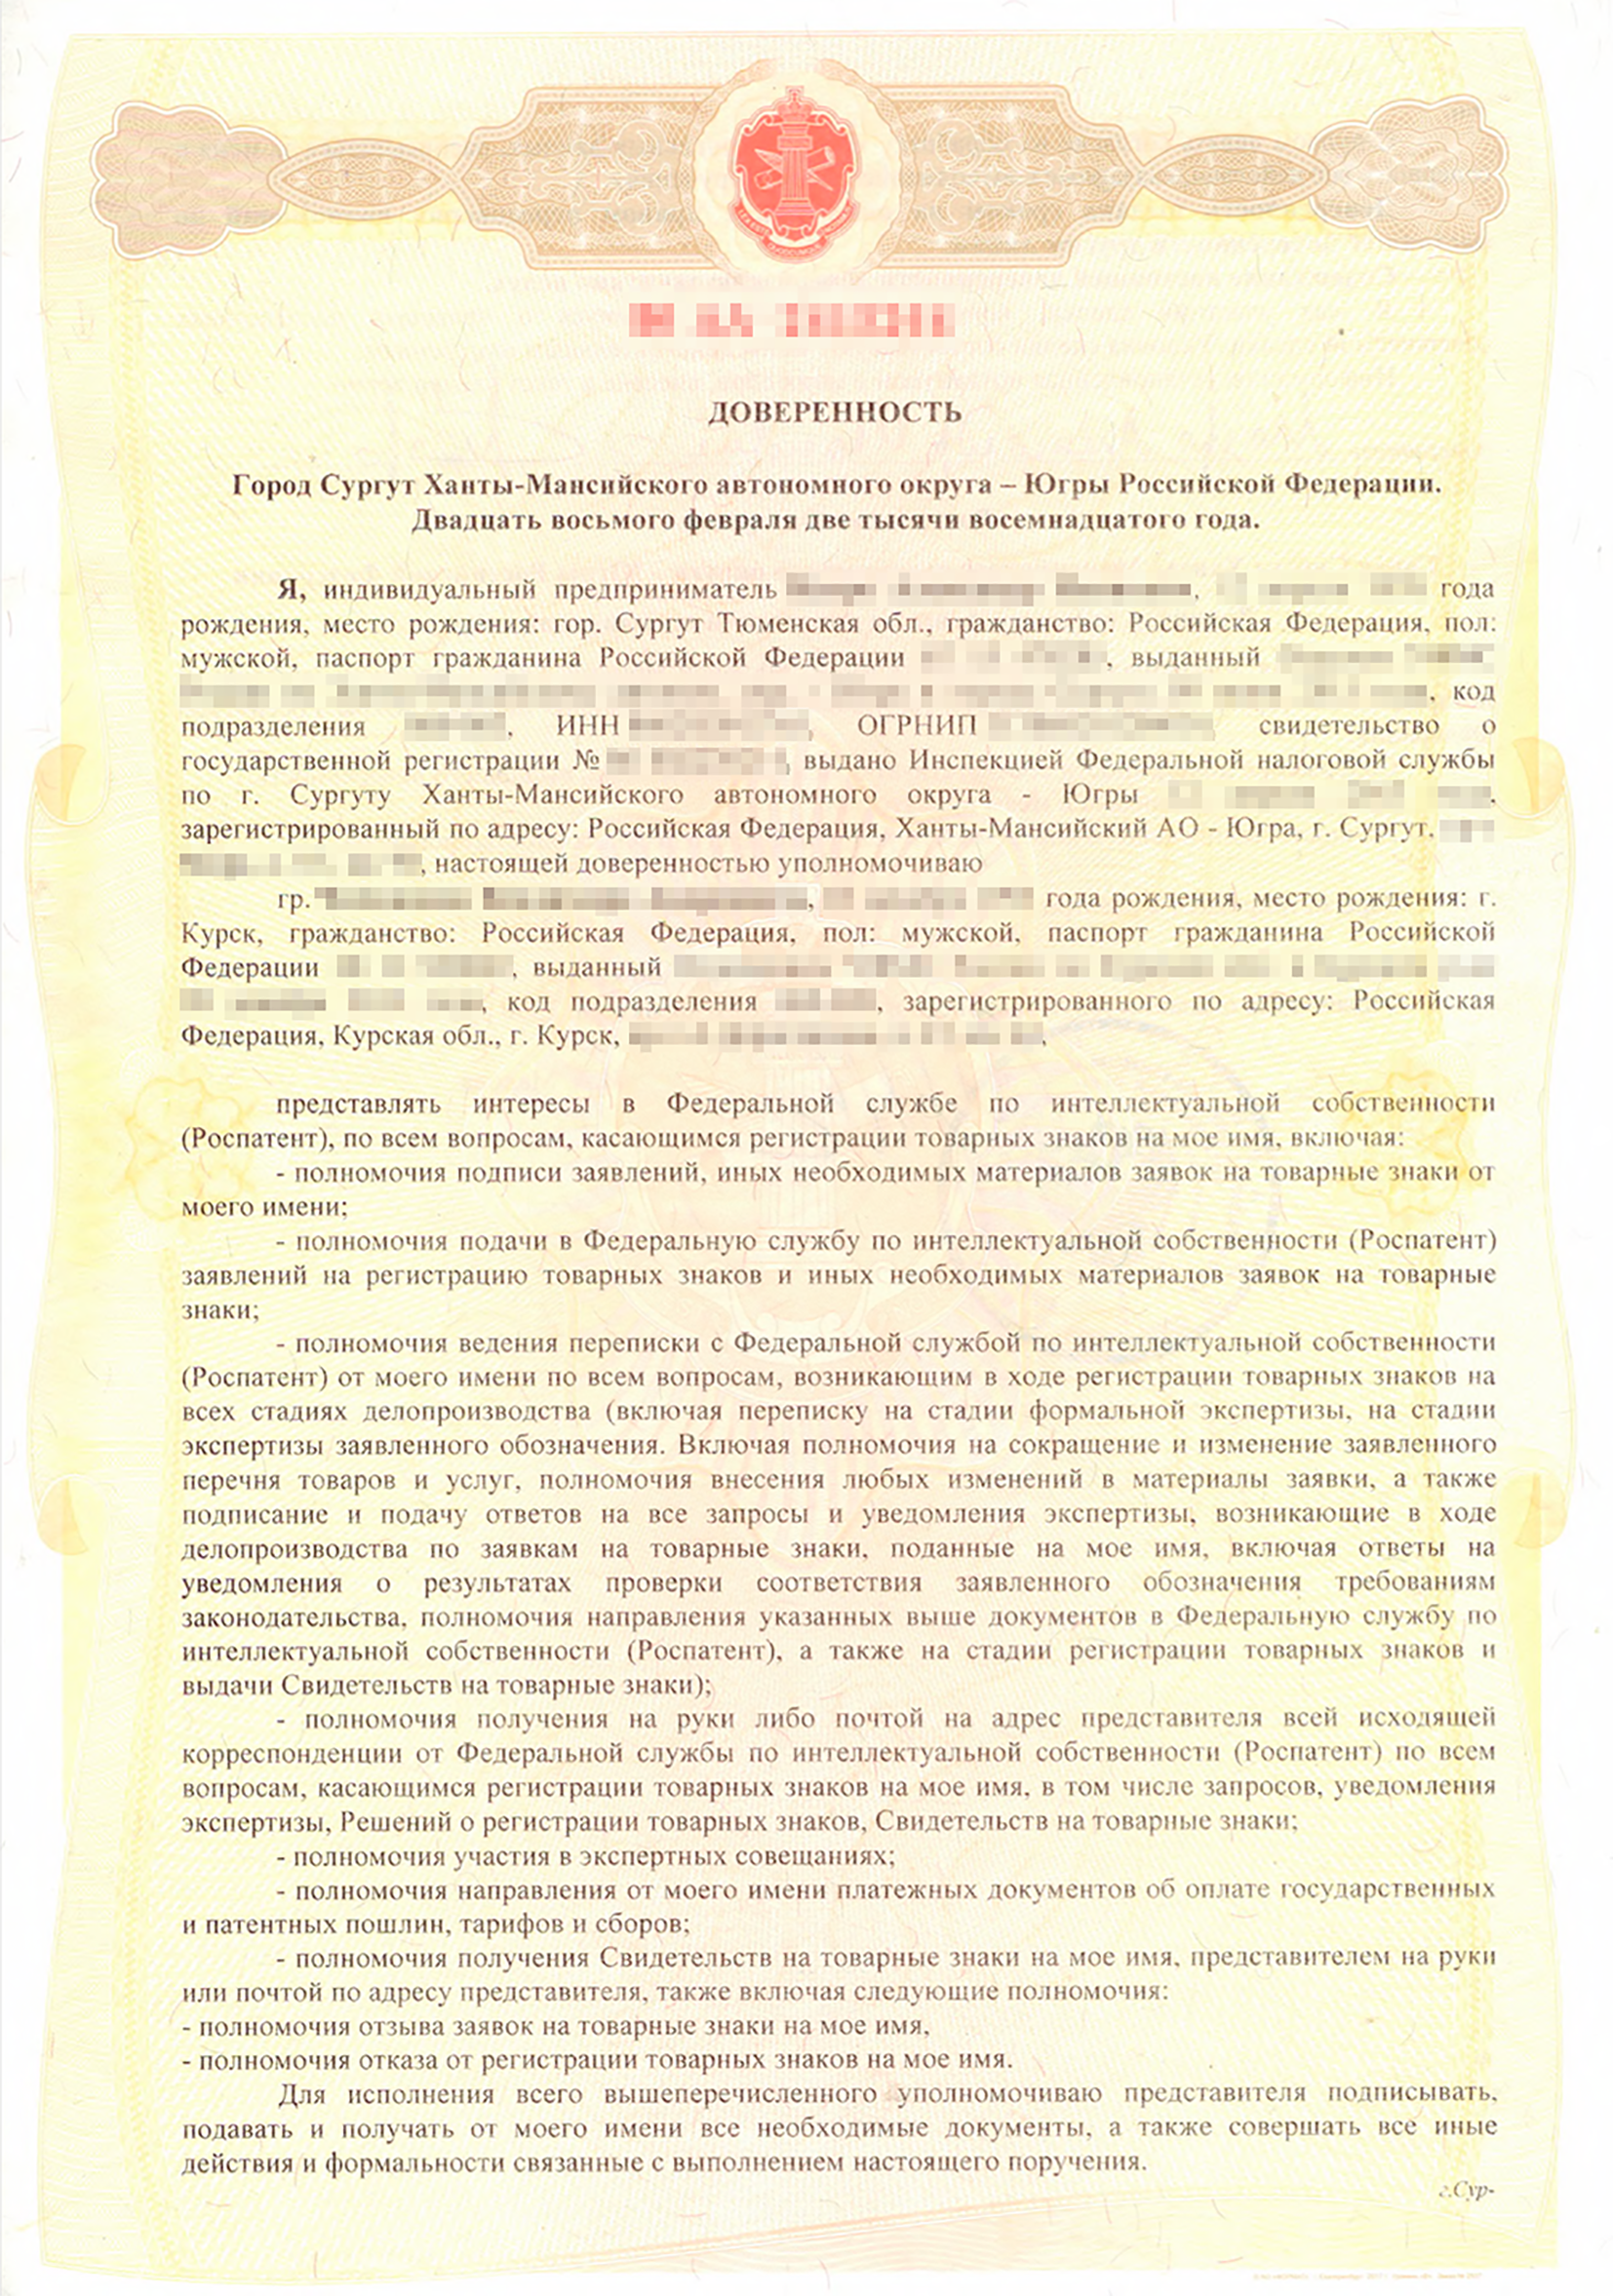 Сертификат о знании русского языка для гражданства